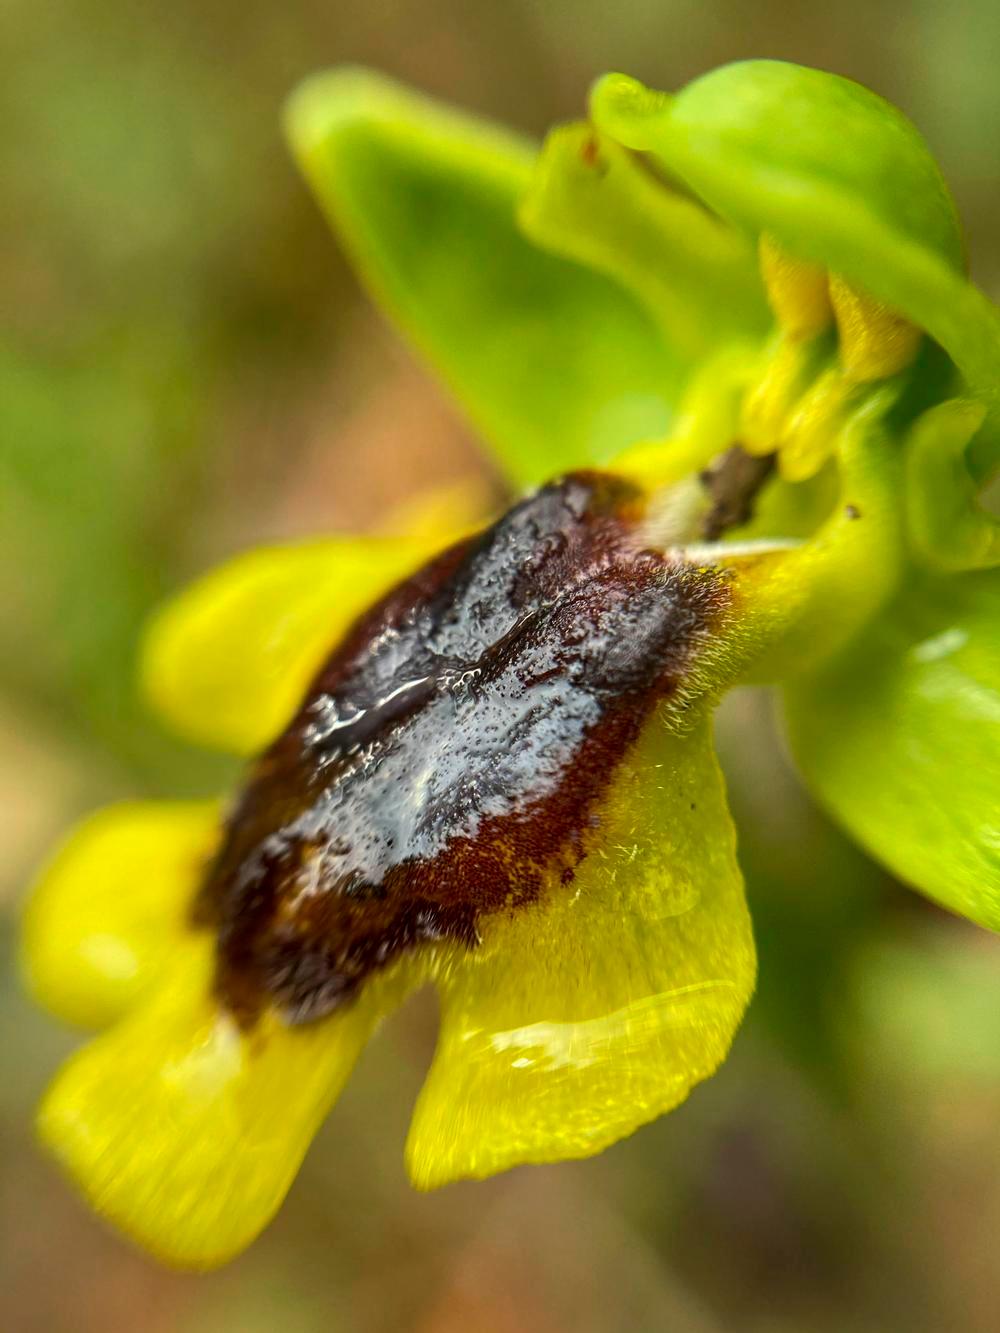 La ophrys lutea también es de las llamadas orquídeas abeja. Destaca su labelo amarillo.